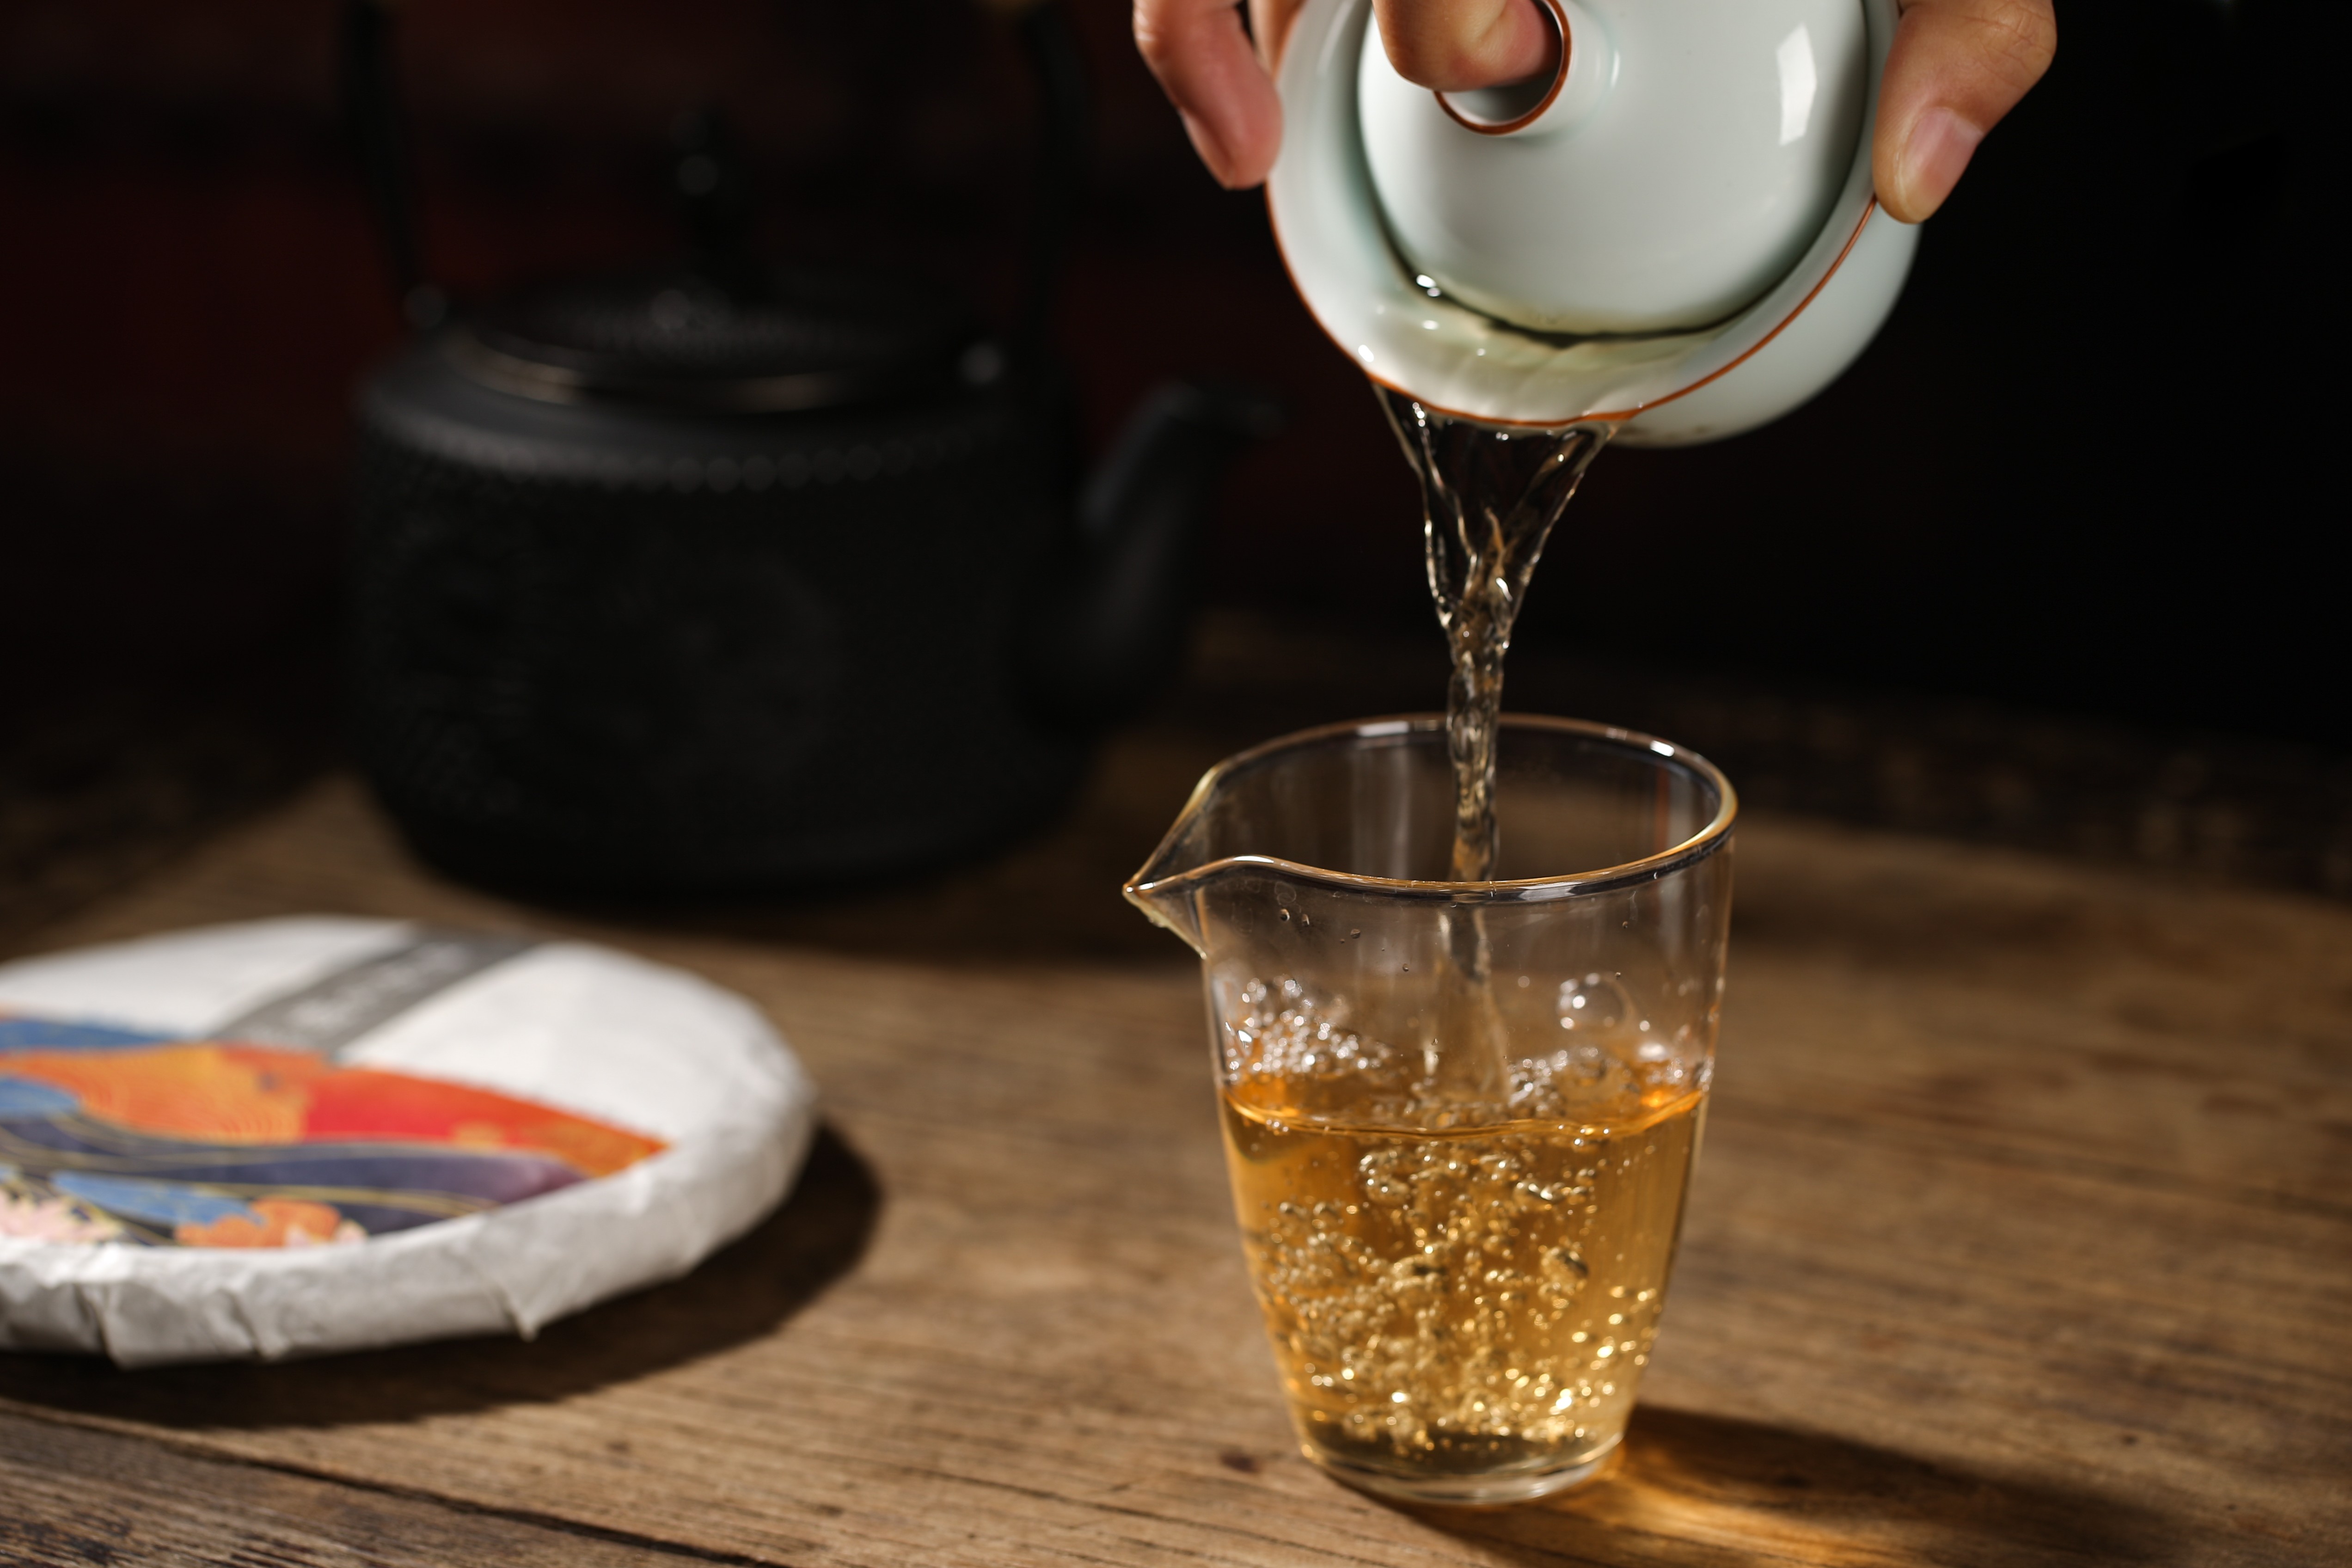 境升茶葉官網|云南普洱茶加盟|云南普洱茶批發|云南普洱茶代理|云南境升茶葉有限公司